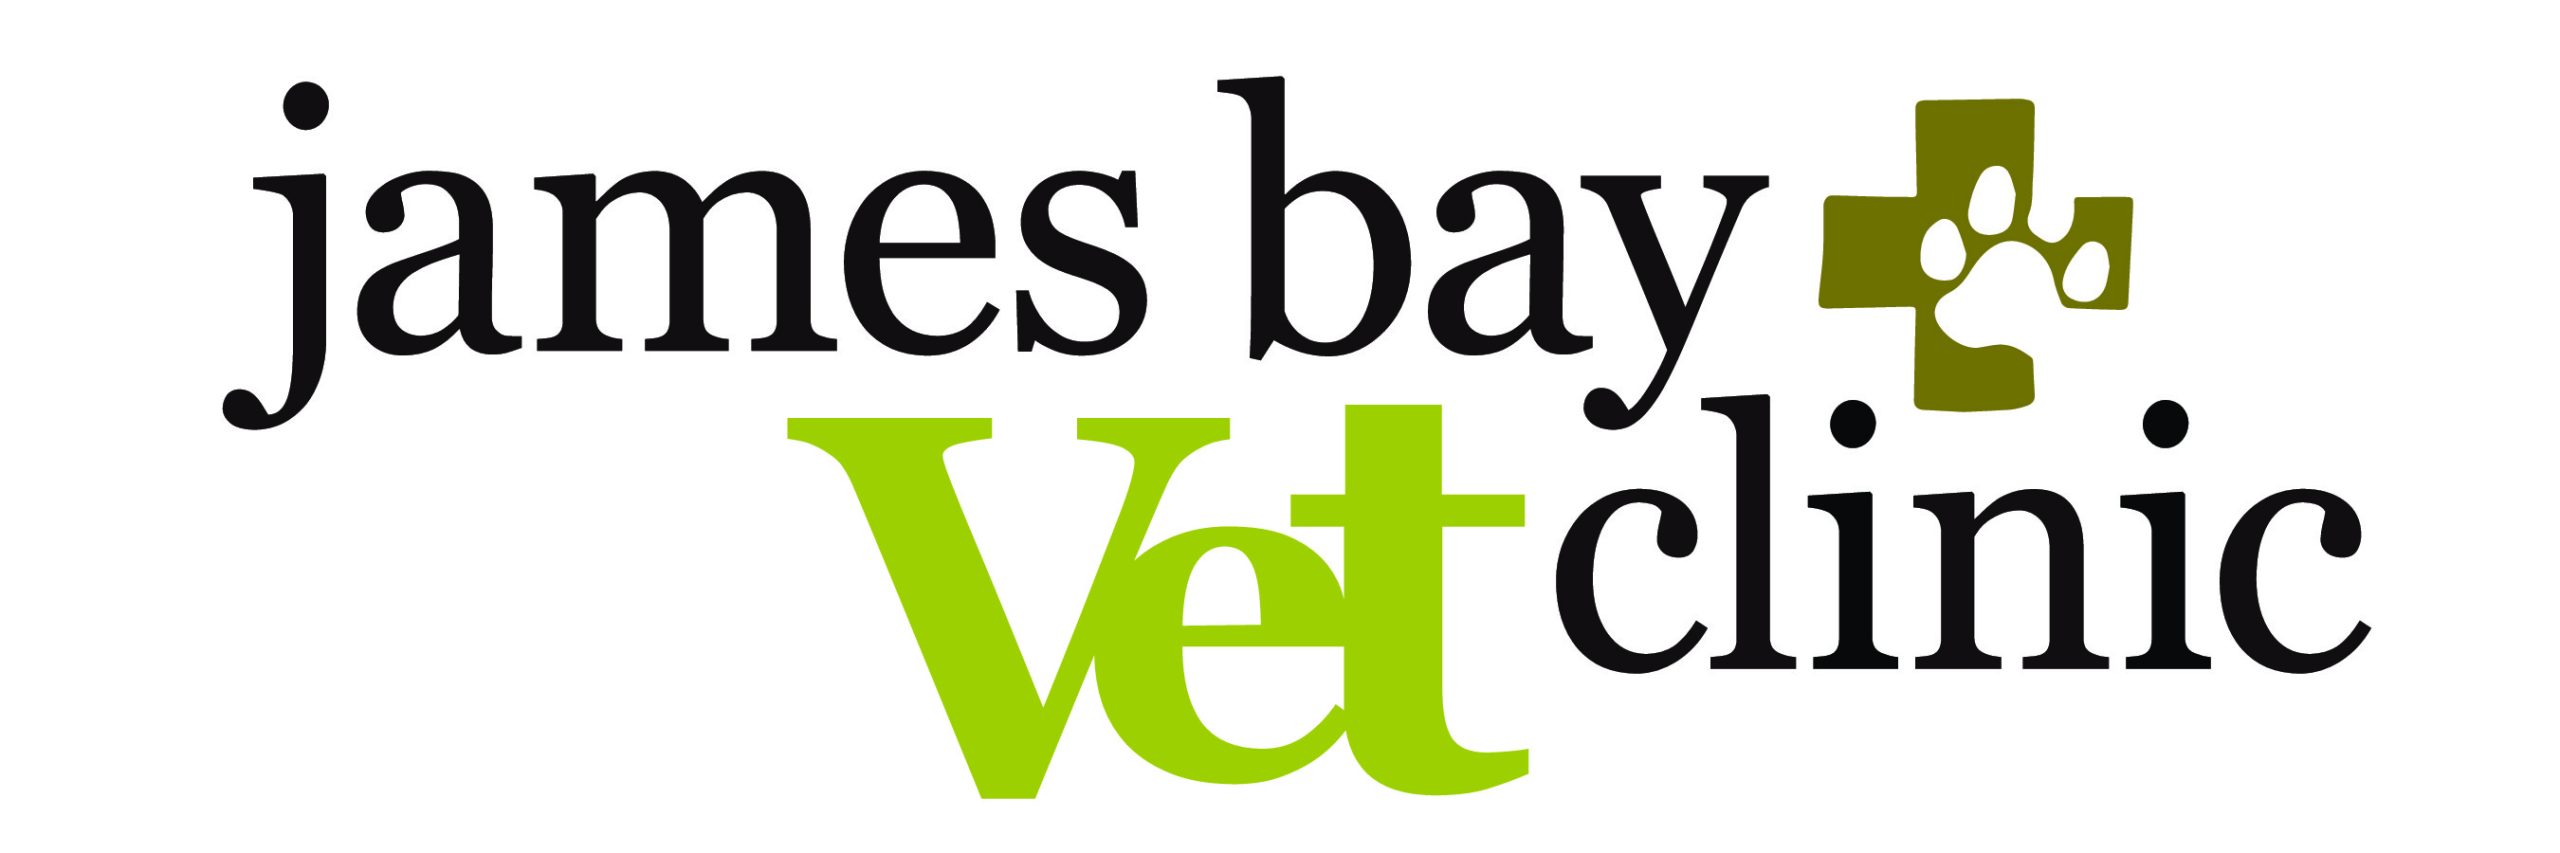 James Bay Vet Clinic